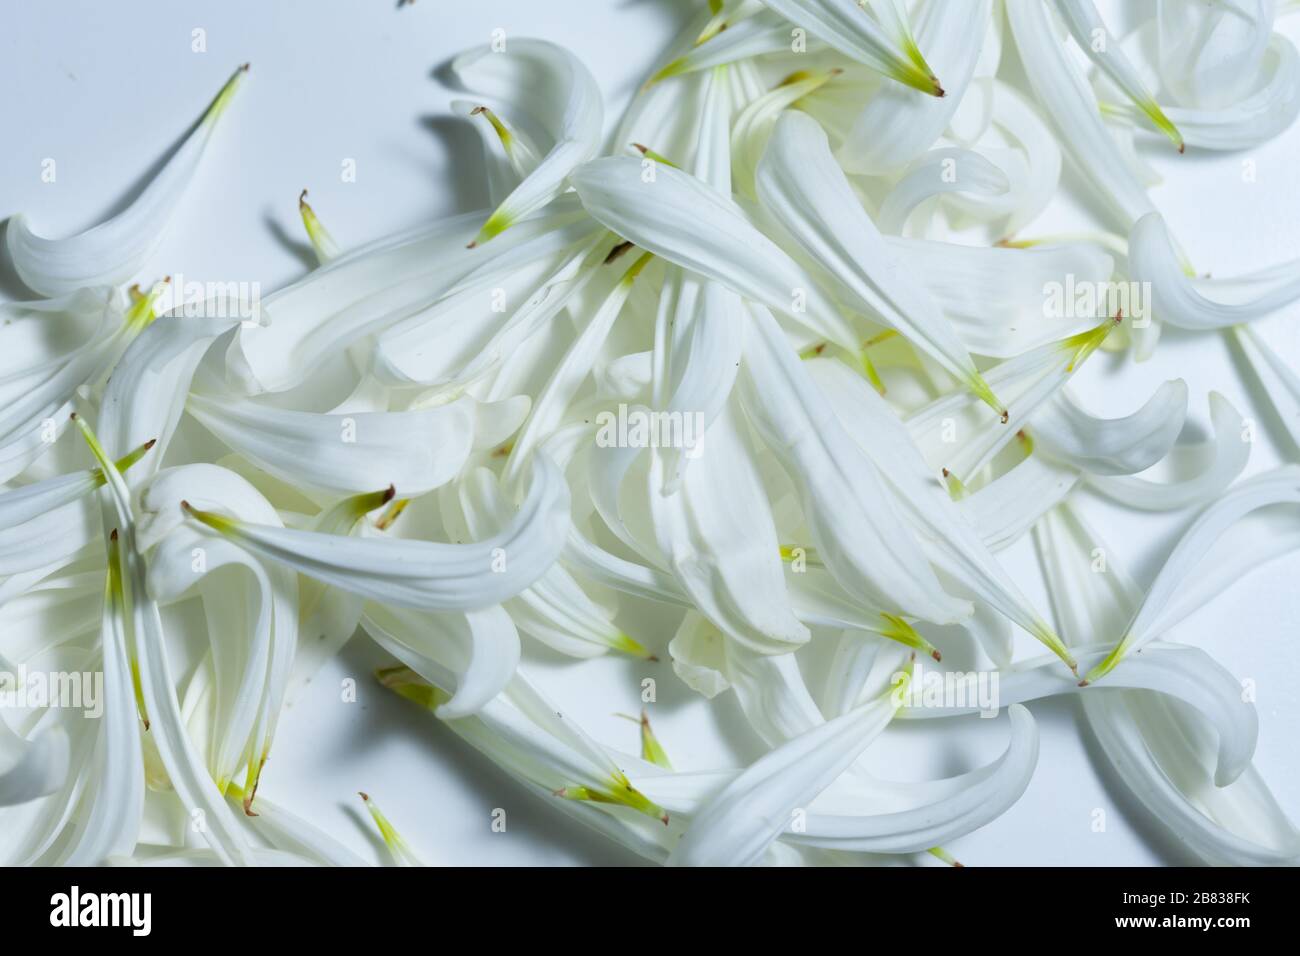 Leerer weißer Raum mit weißen Kronblättern, romantischem Hintergrund und Platz für Text Stockfoto